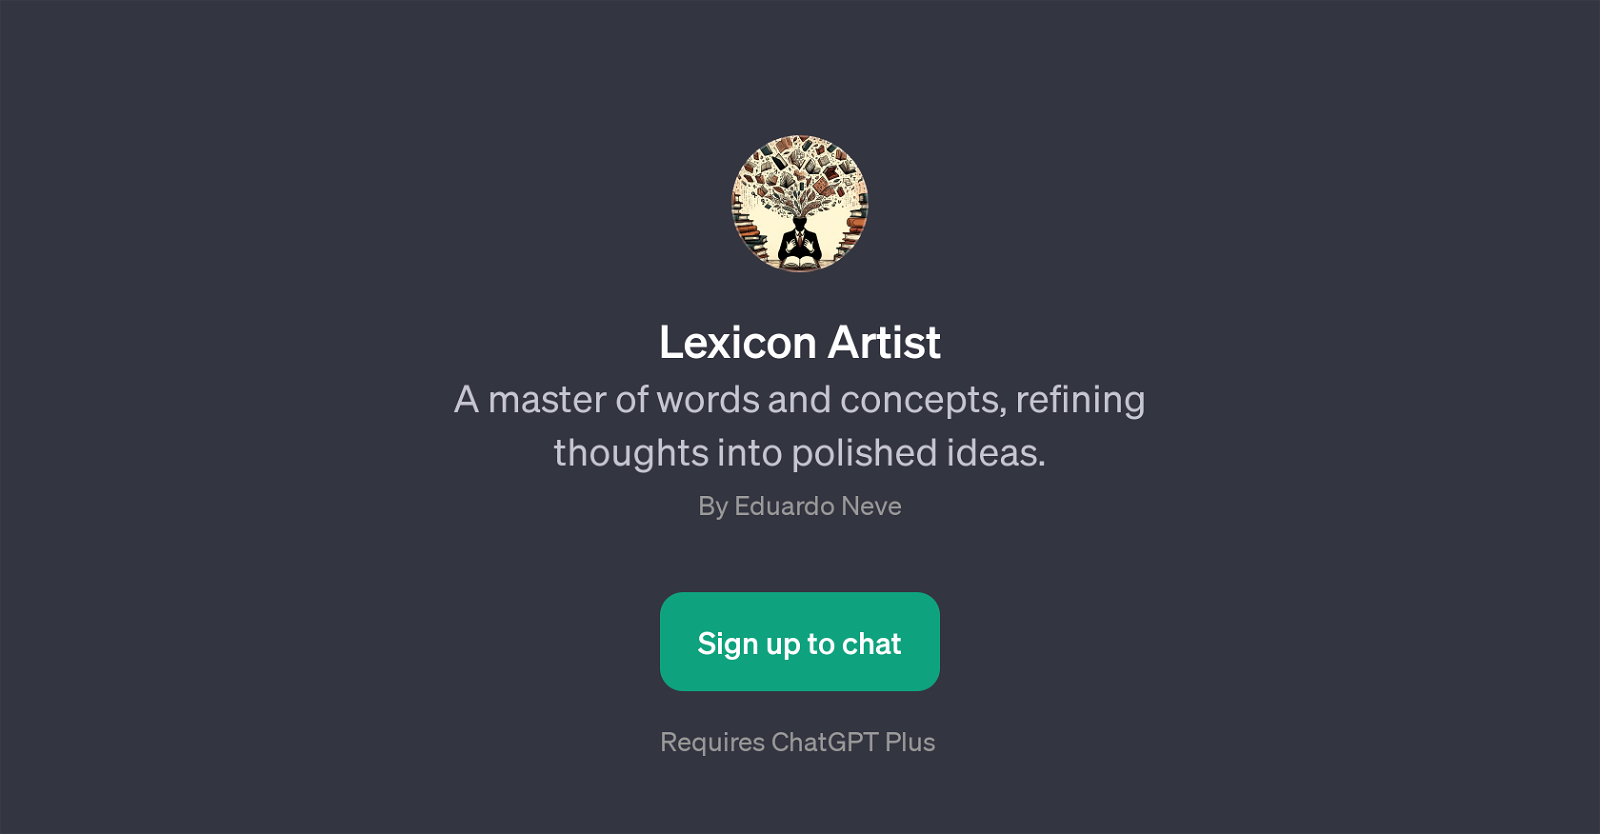 Lexicon Artist website